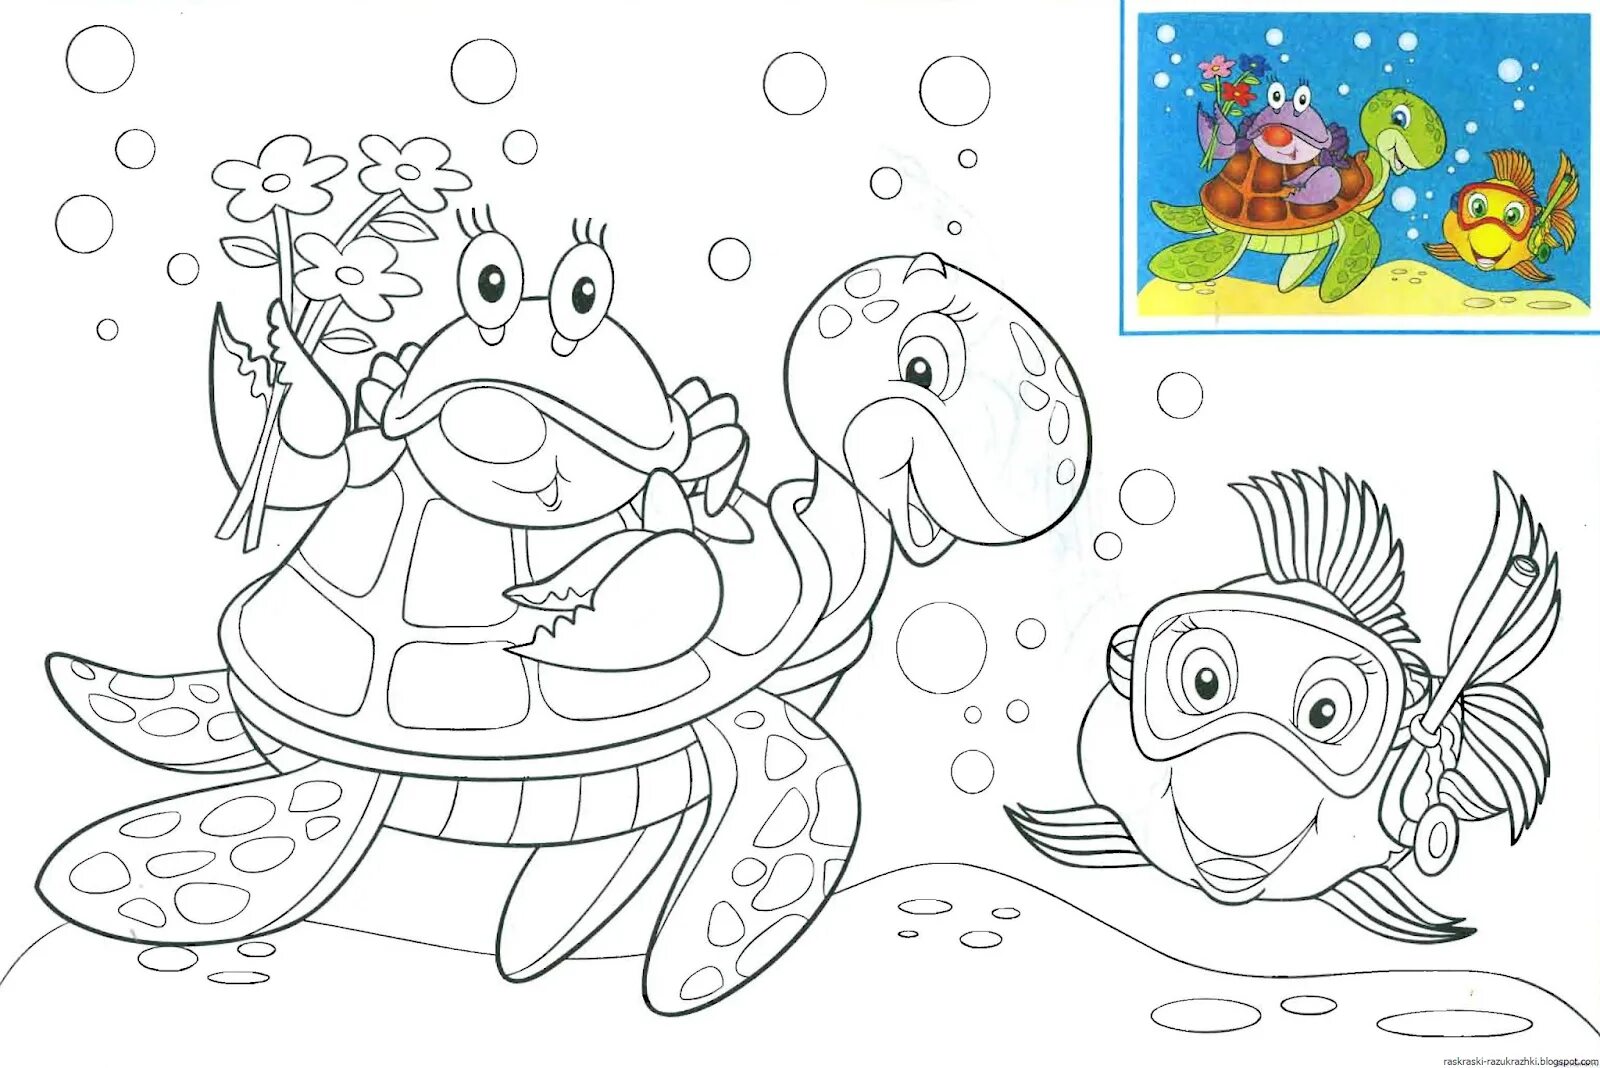 Underwater world for children 5 6 years old #2